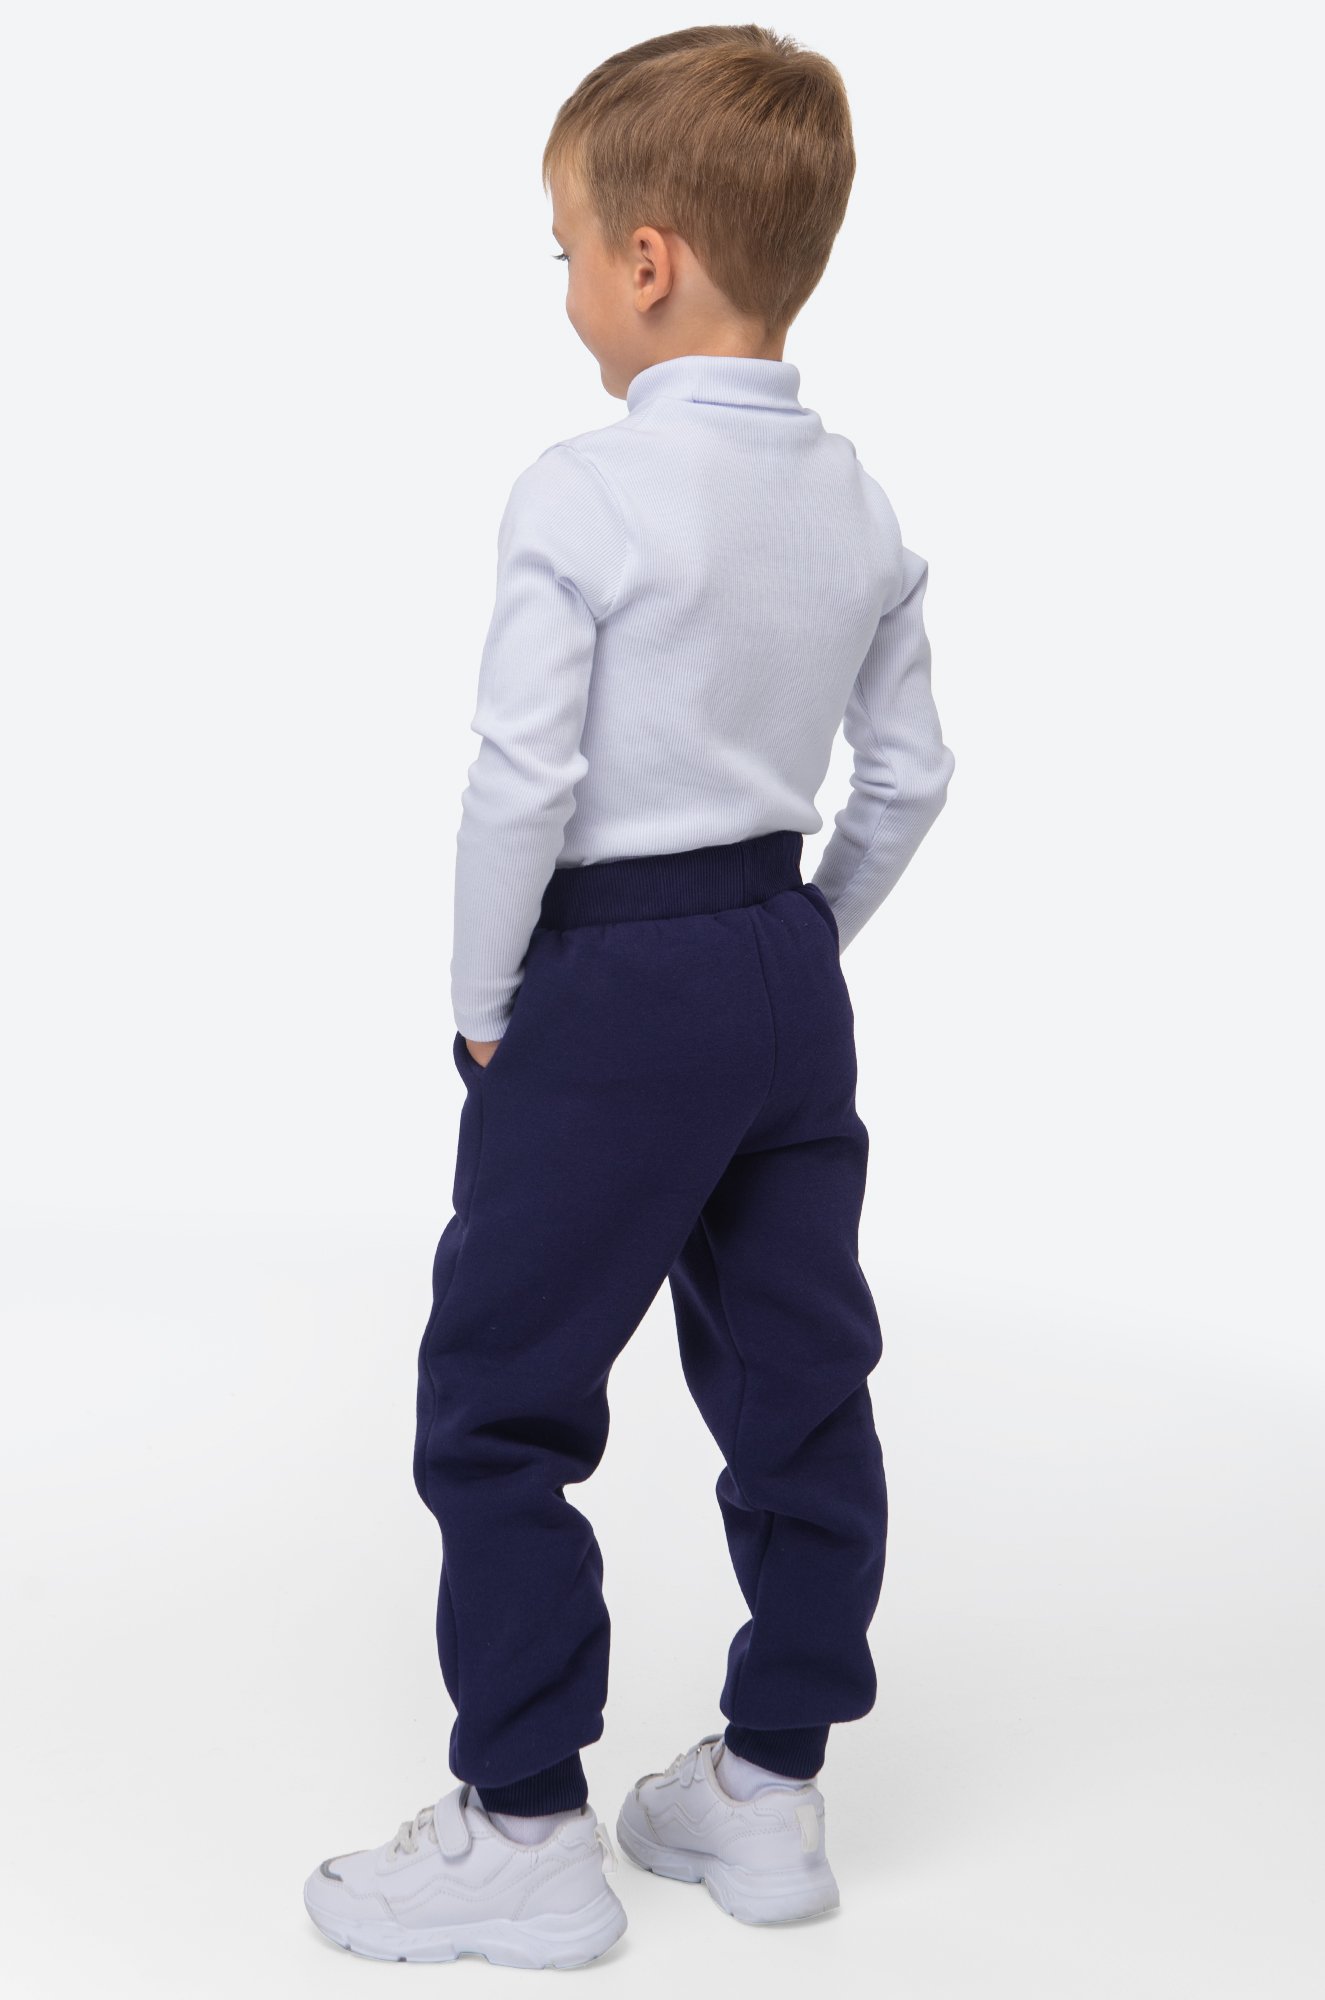 Теплые брюки для мальчика из футера трехнитки с начесом Bonito